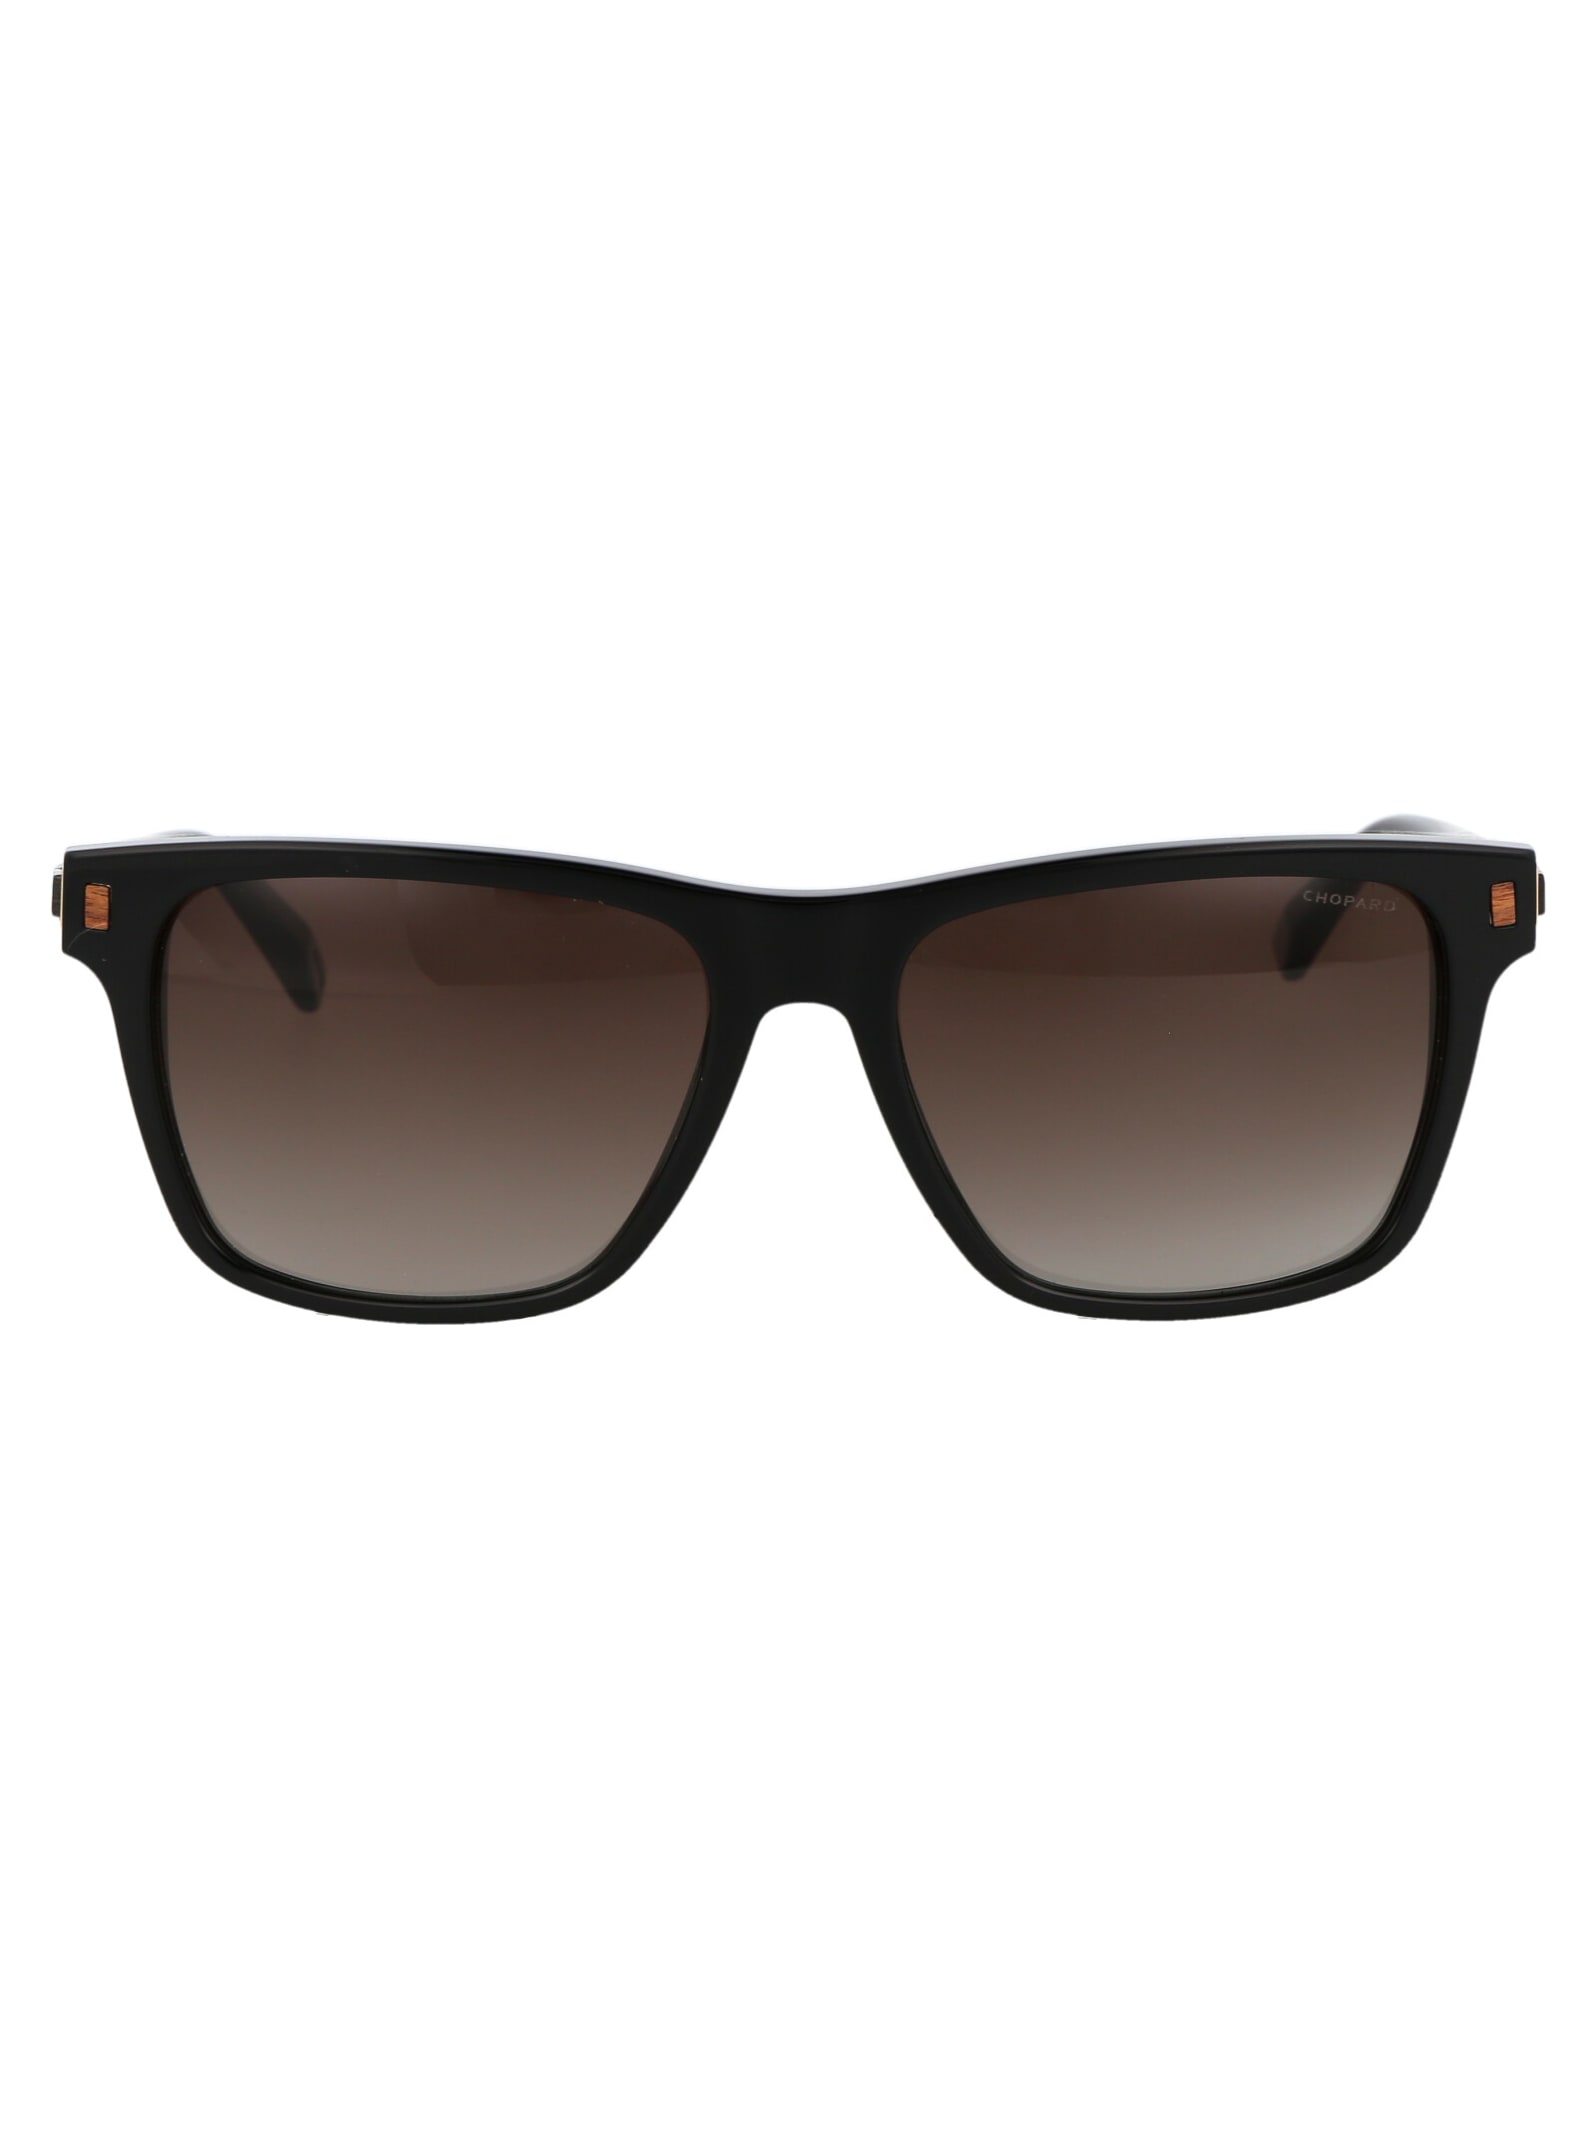 Chopard Sch312 Sunglasses